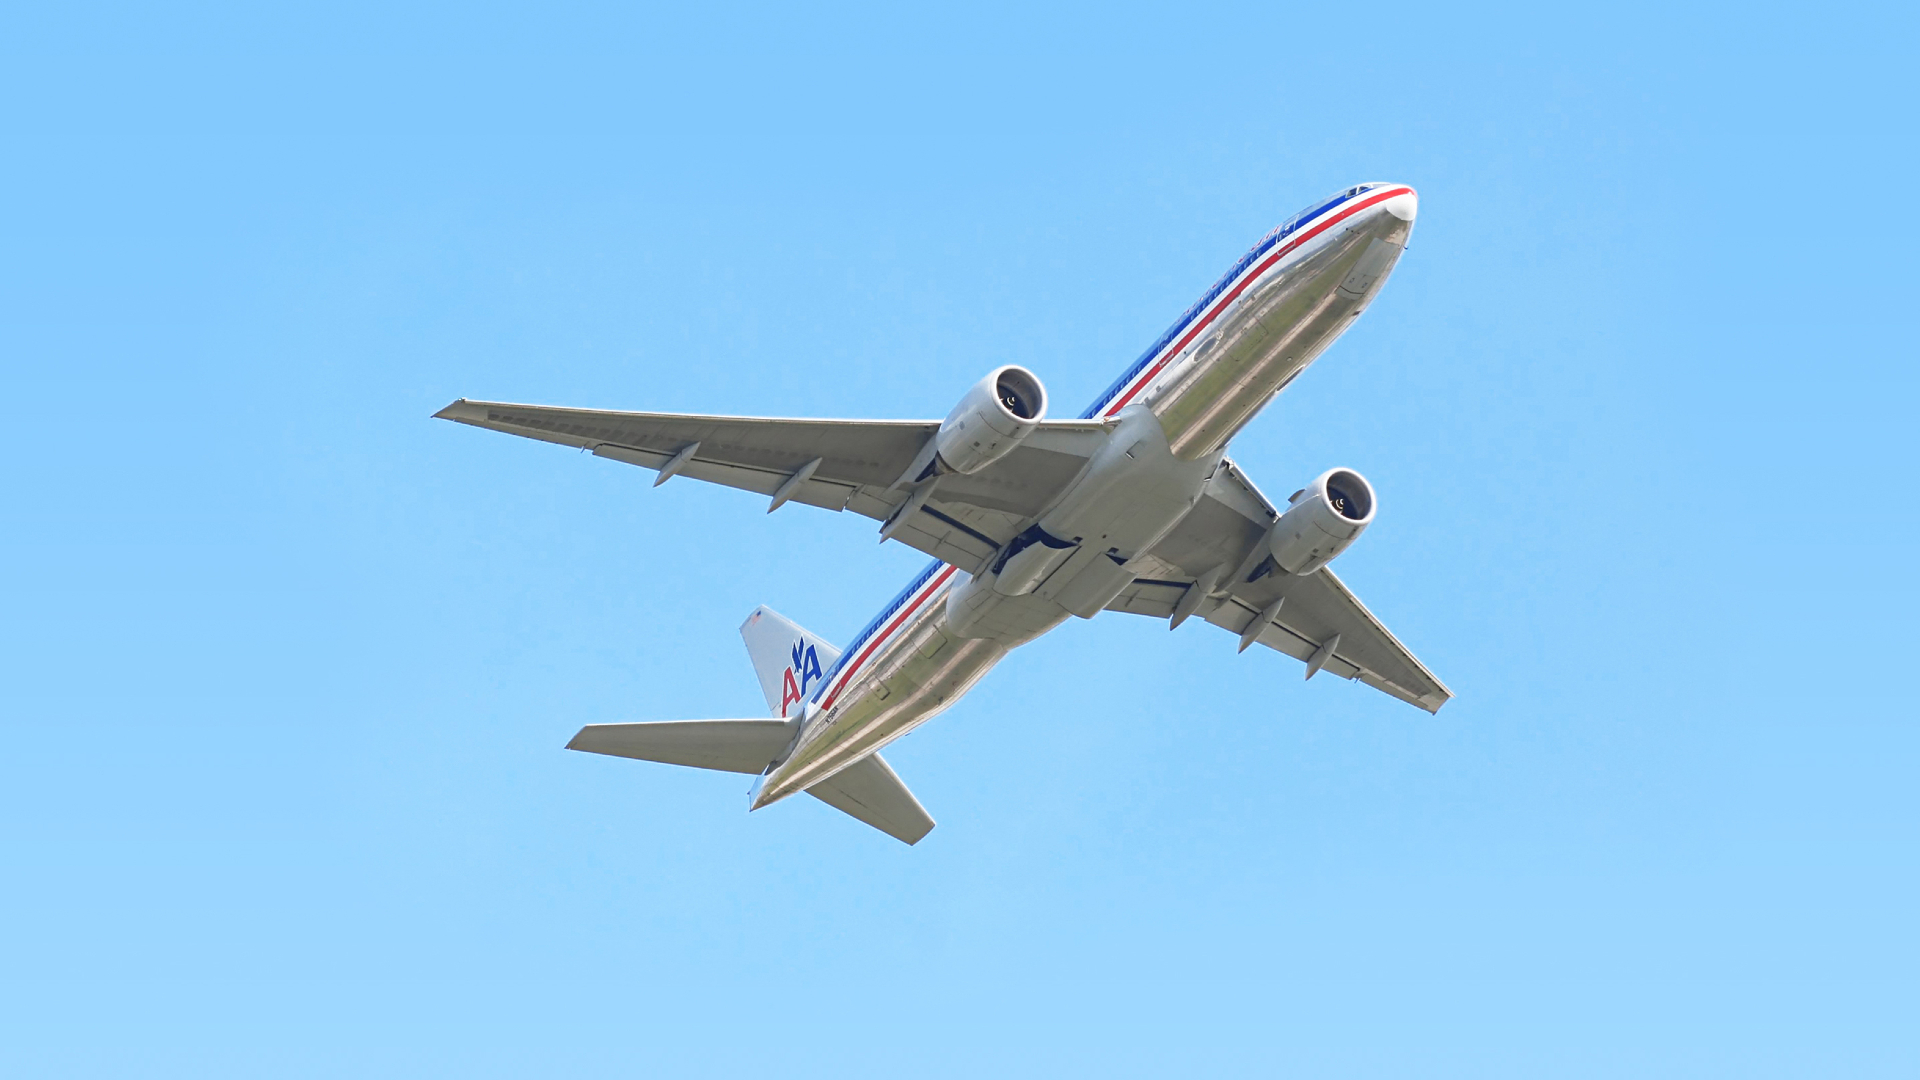 Majdnem összeütközött egy amerikai utasszállító egy azonosítatlan repülő tárggyal